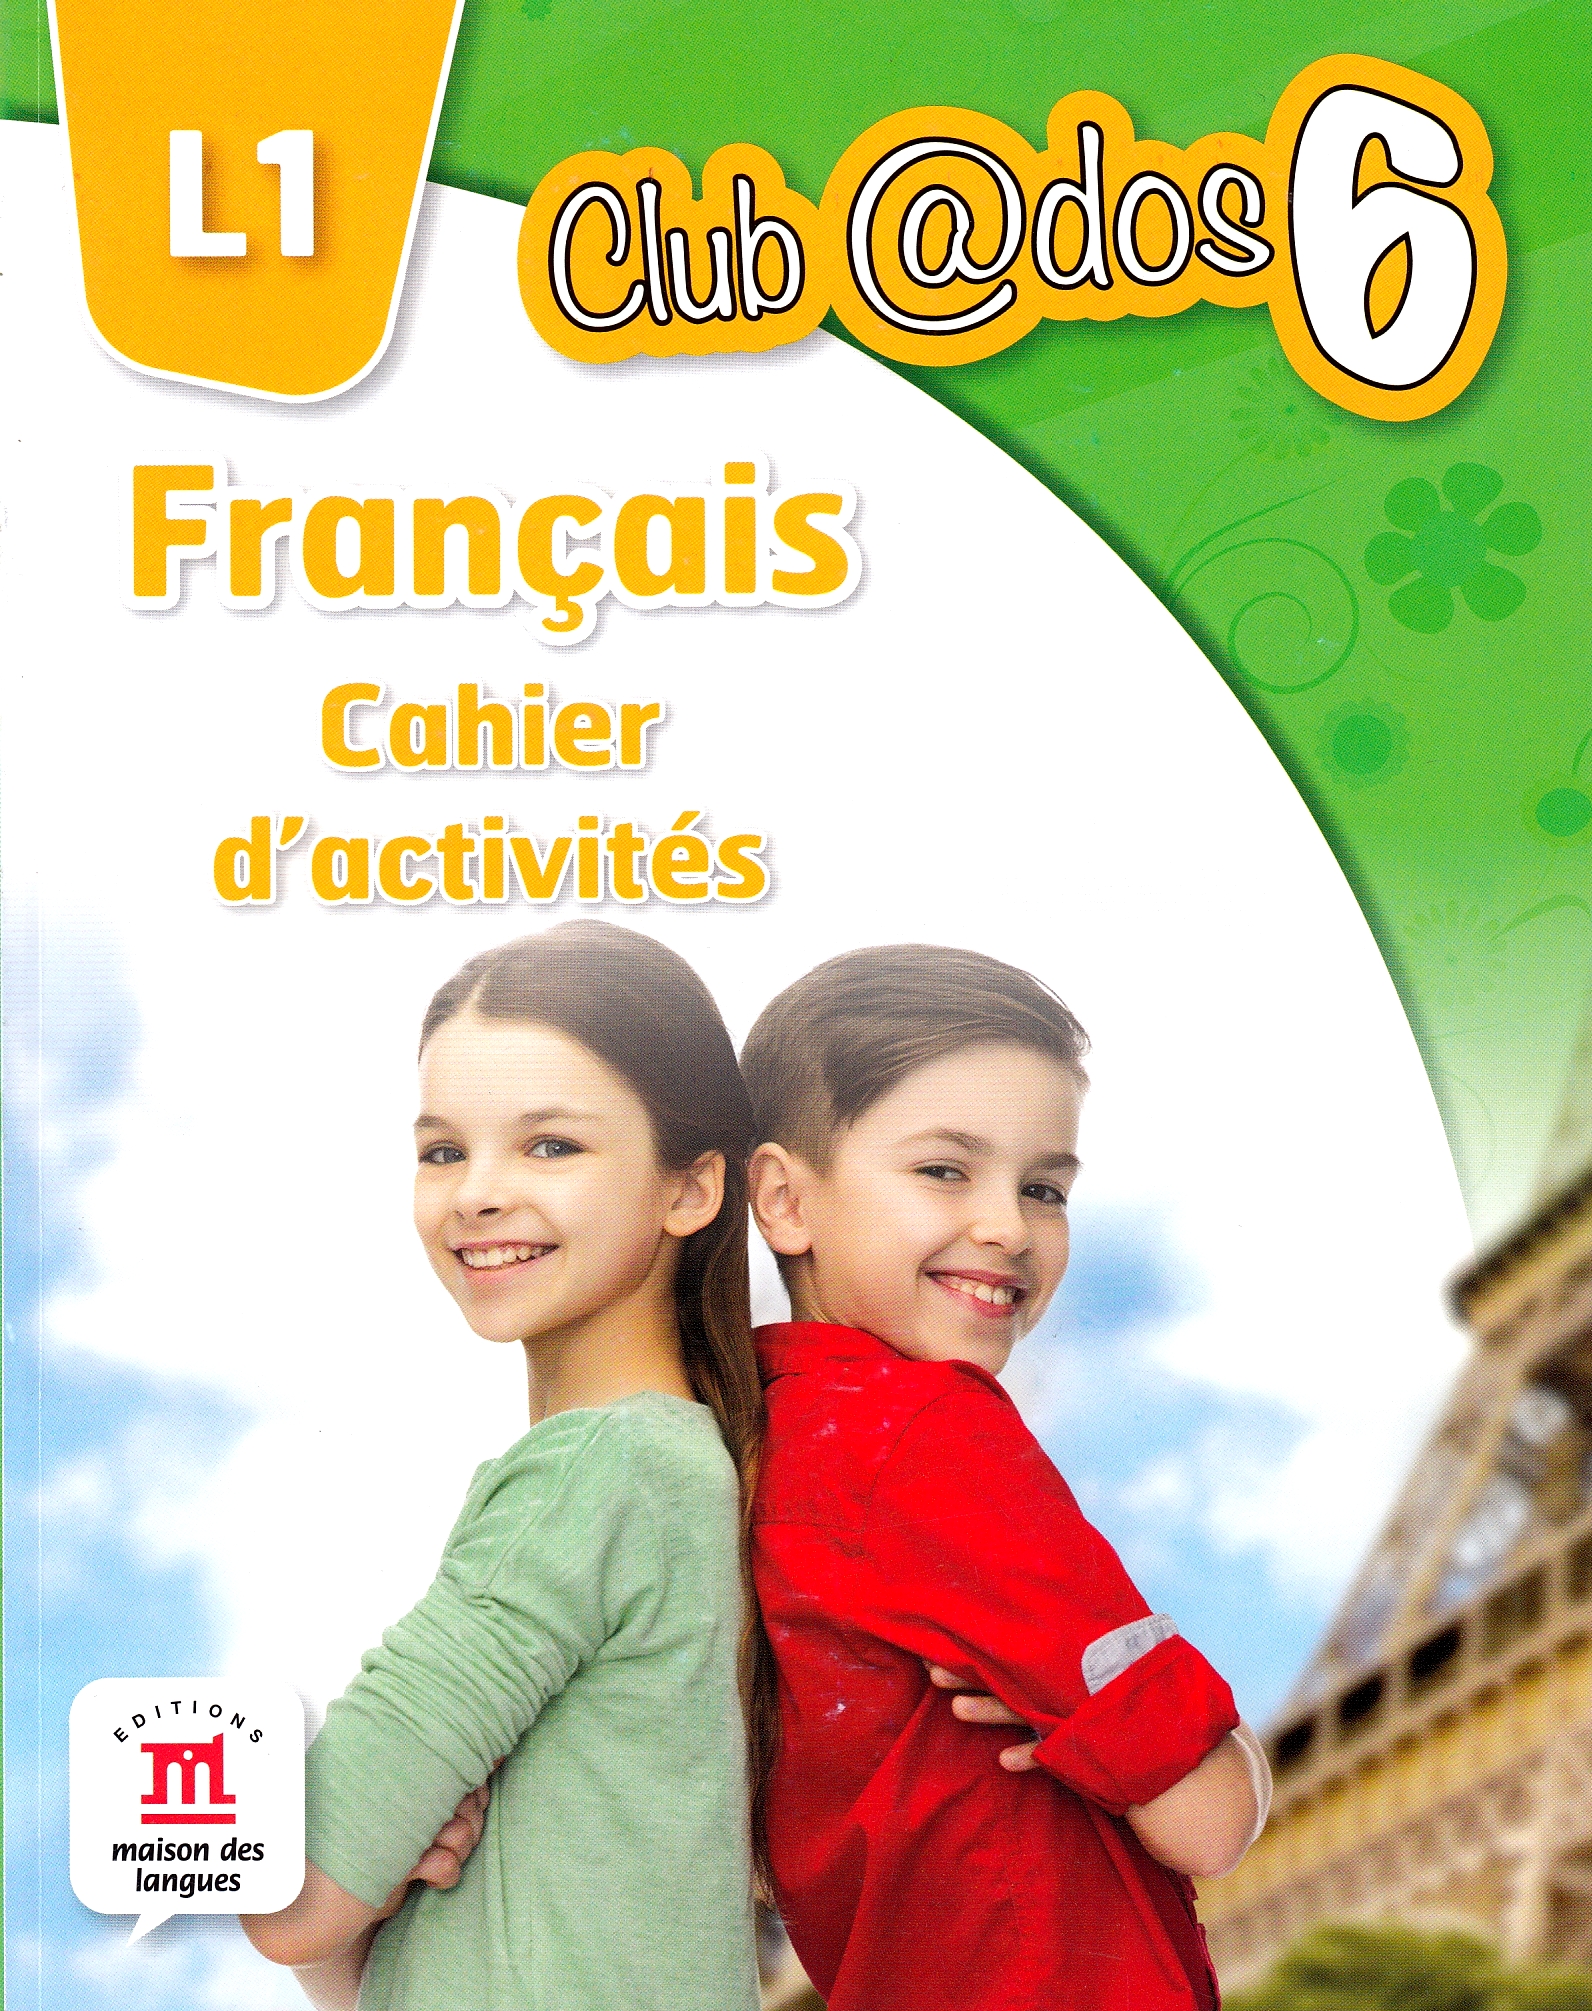 Club dos. Francais L1. Cahier d'activites. Lectia de franceza - Clasa 6 - Raisa Elena Vlad, Dorin Gulie